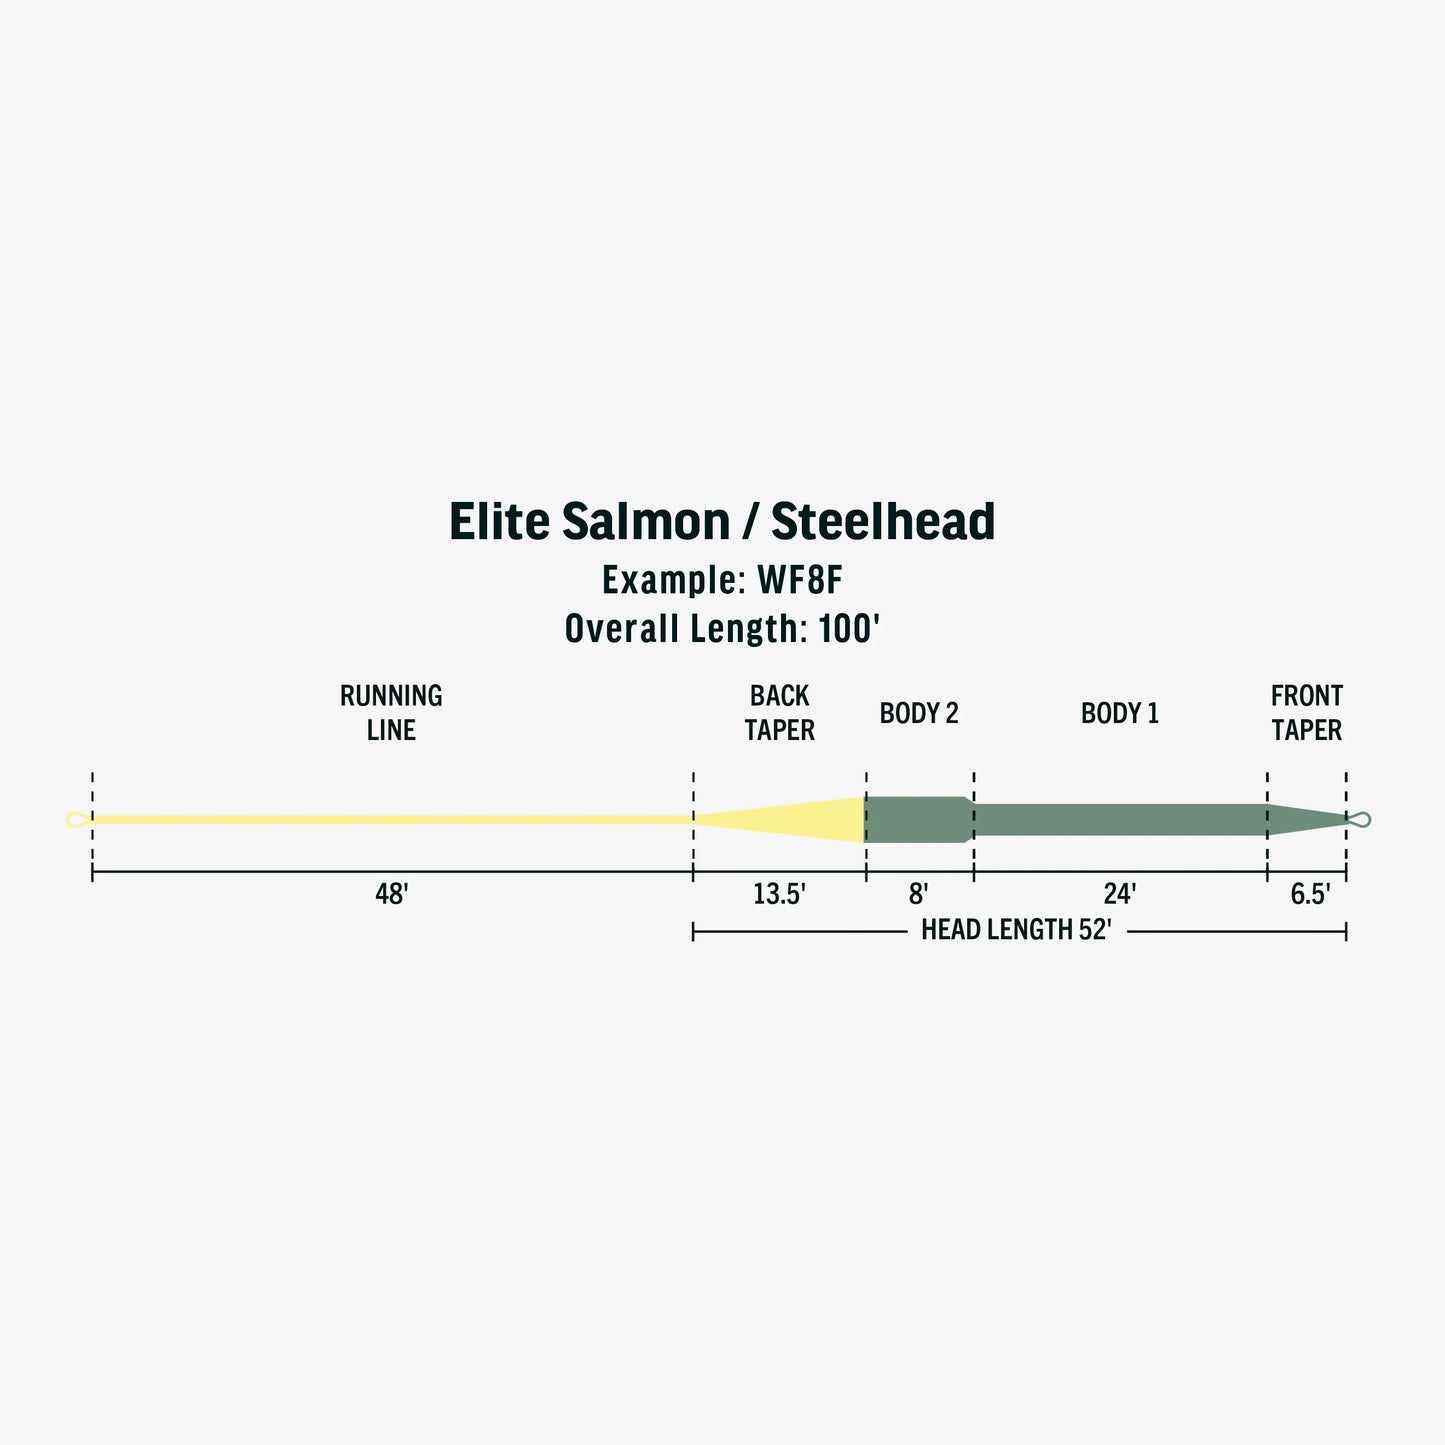 Rio Elite Salmon/Steelhead